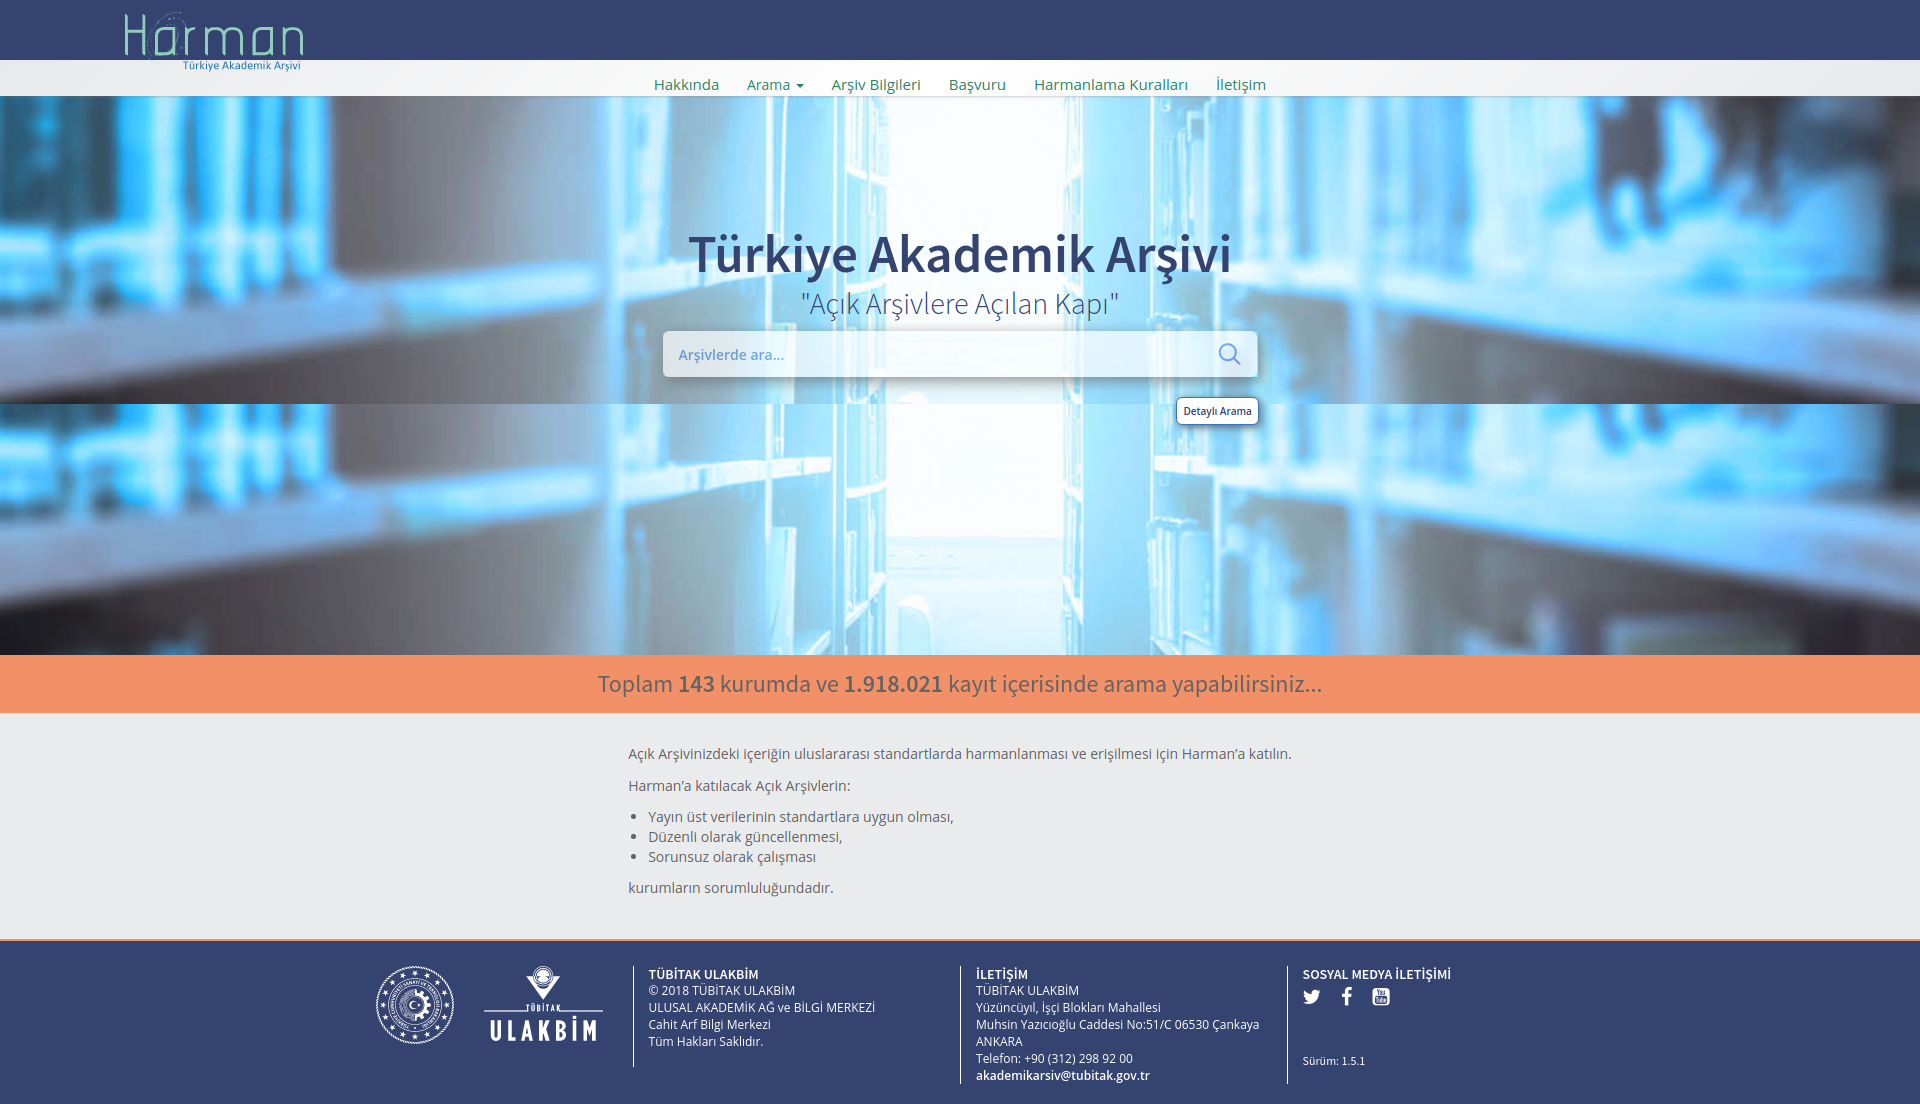 HARMAN - Türkiye Akademik Arşivi